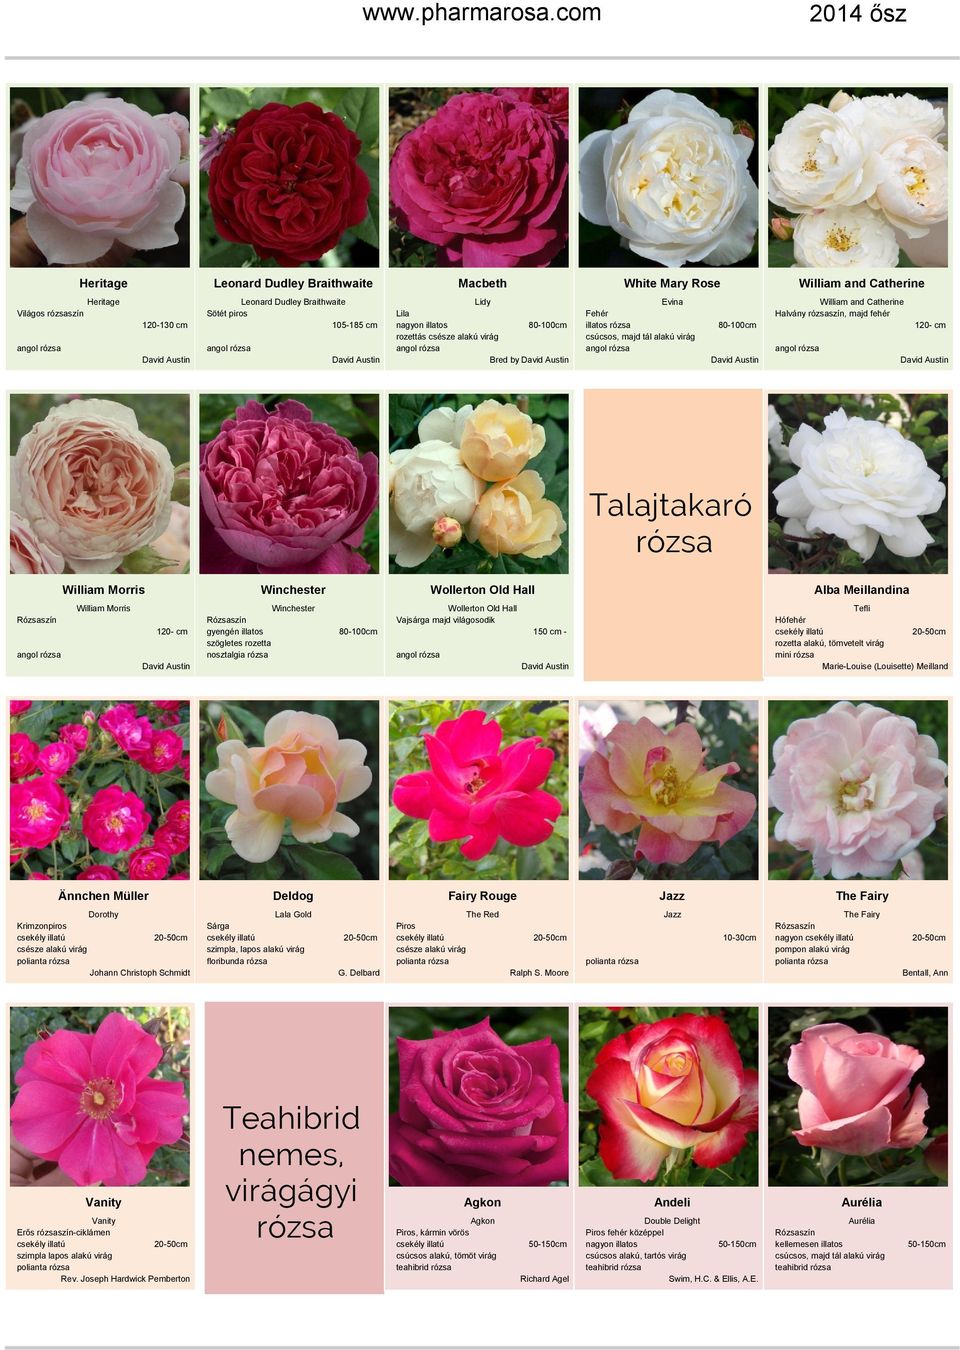 120- cm Winchester szögletes rozetta nosztalgia rózsa 80-100cm Wollerton Old Hall Vajsárga majd világosodik 150 cm - Tefli Hófehér rozetta alakú, tömvetelt virág Marie-Louise (Louisette) Meilland